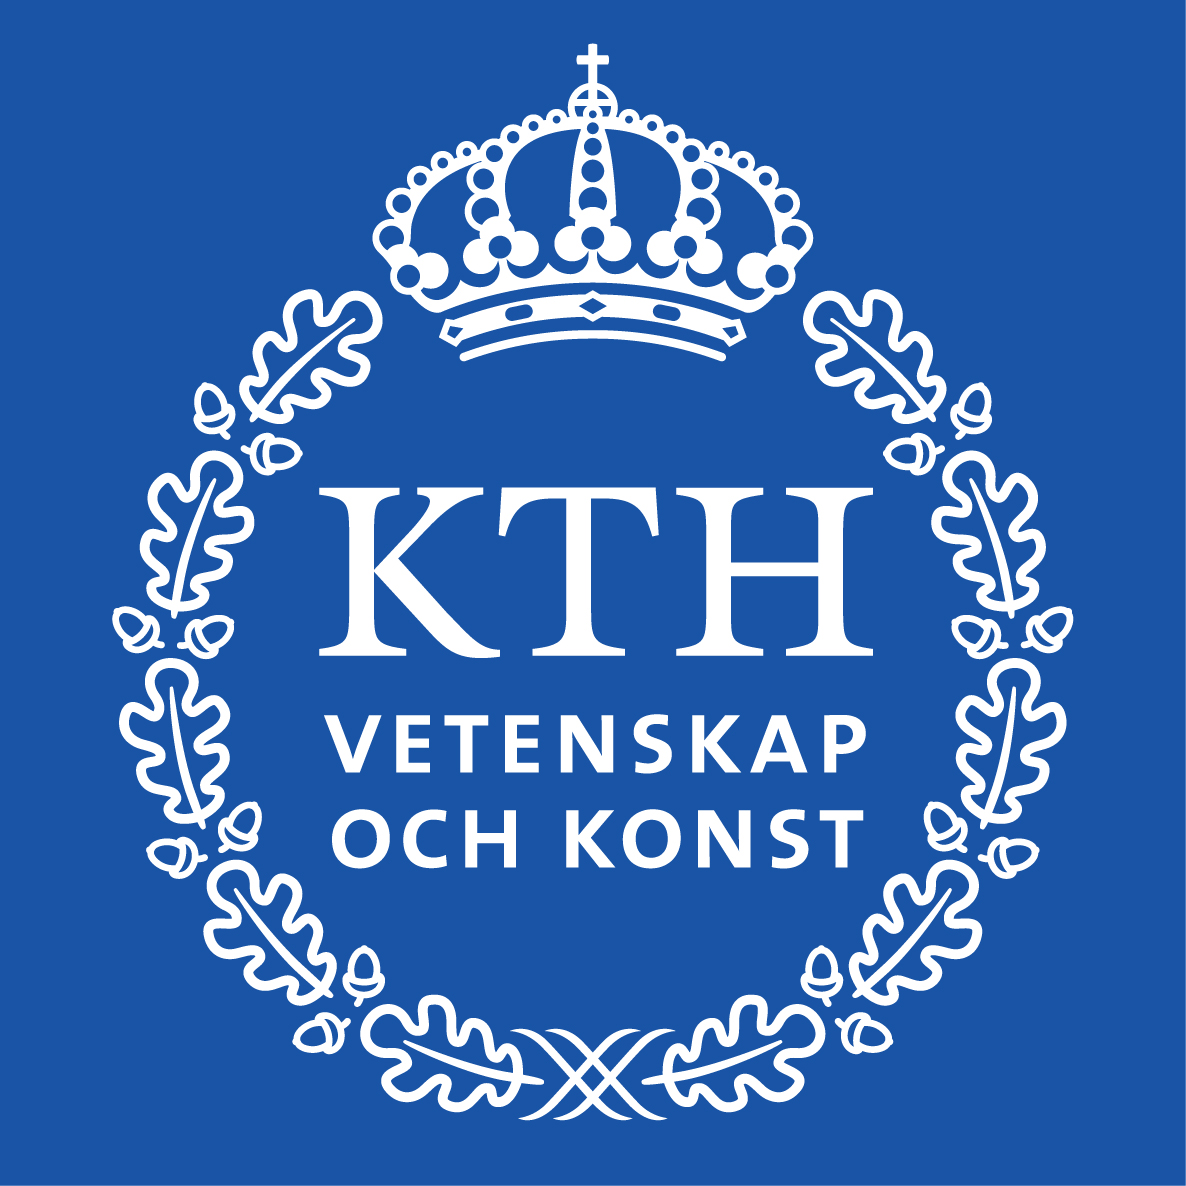 KTH_Logotyp_RGB_2013